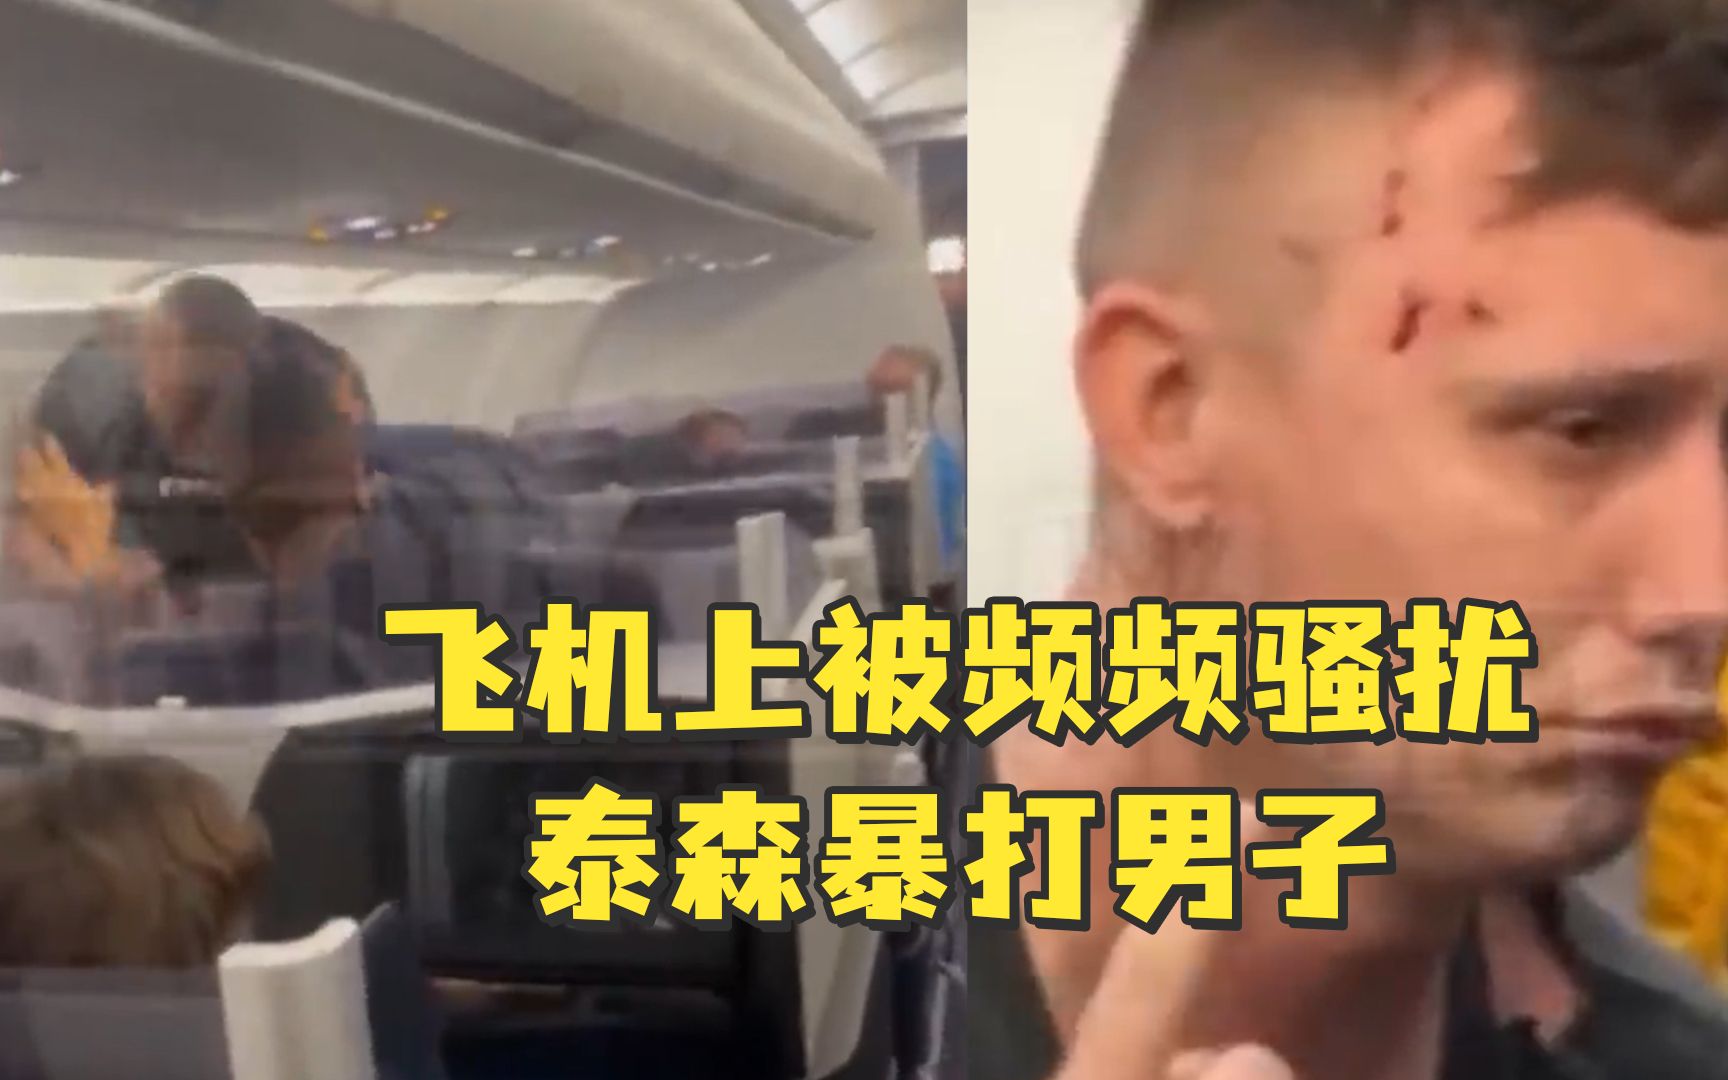 “拳王”泰森飞机上被骚扰，起身暴打对方数拳